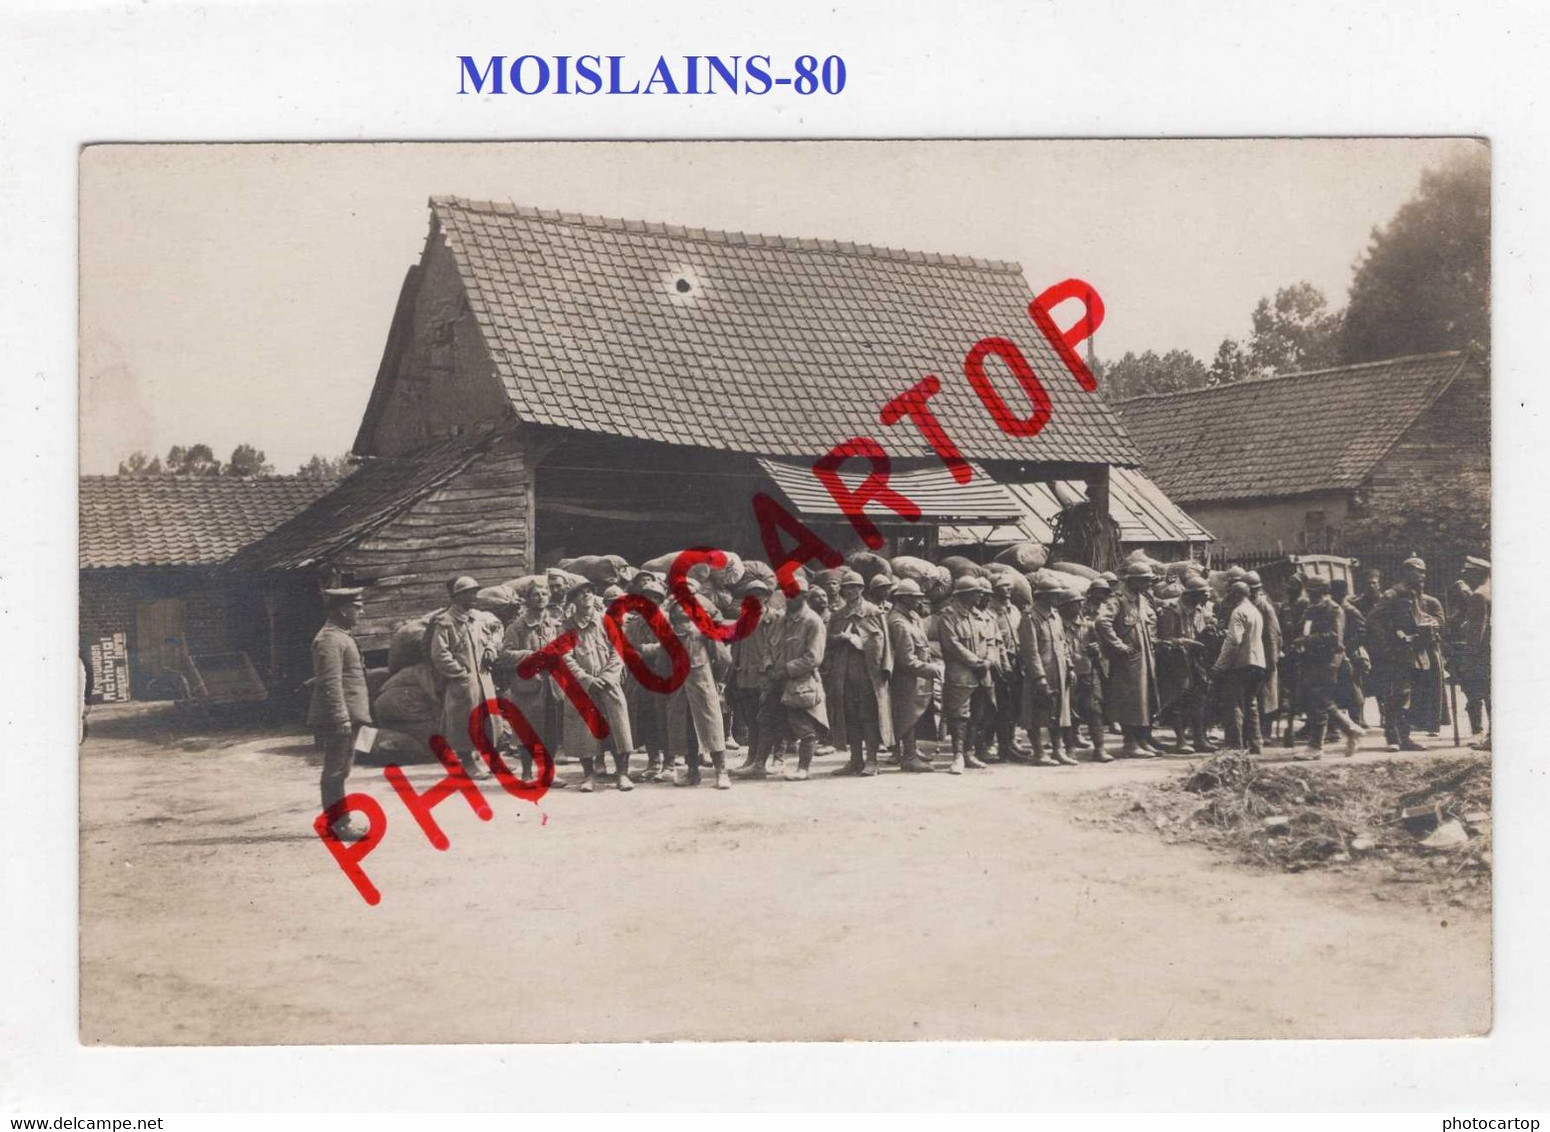 MOISLAINS-Prisonniers Francais Et Senegalais-1-8-1916-CARTE PHOTO Allemande-GUERRE 14-18-1 WK-France-80-Militaria - Moislains